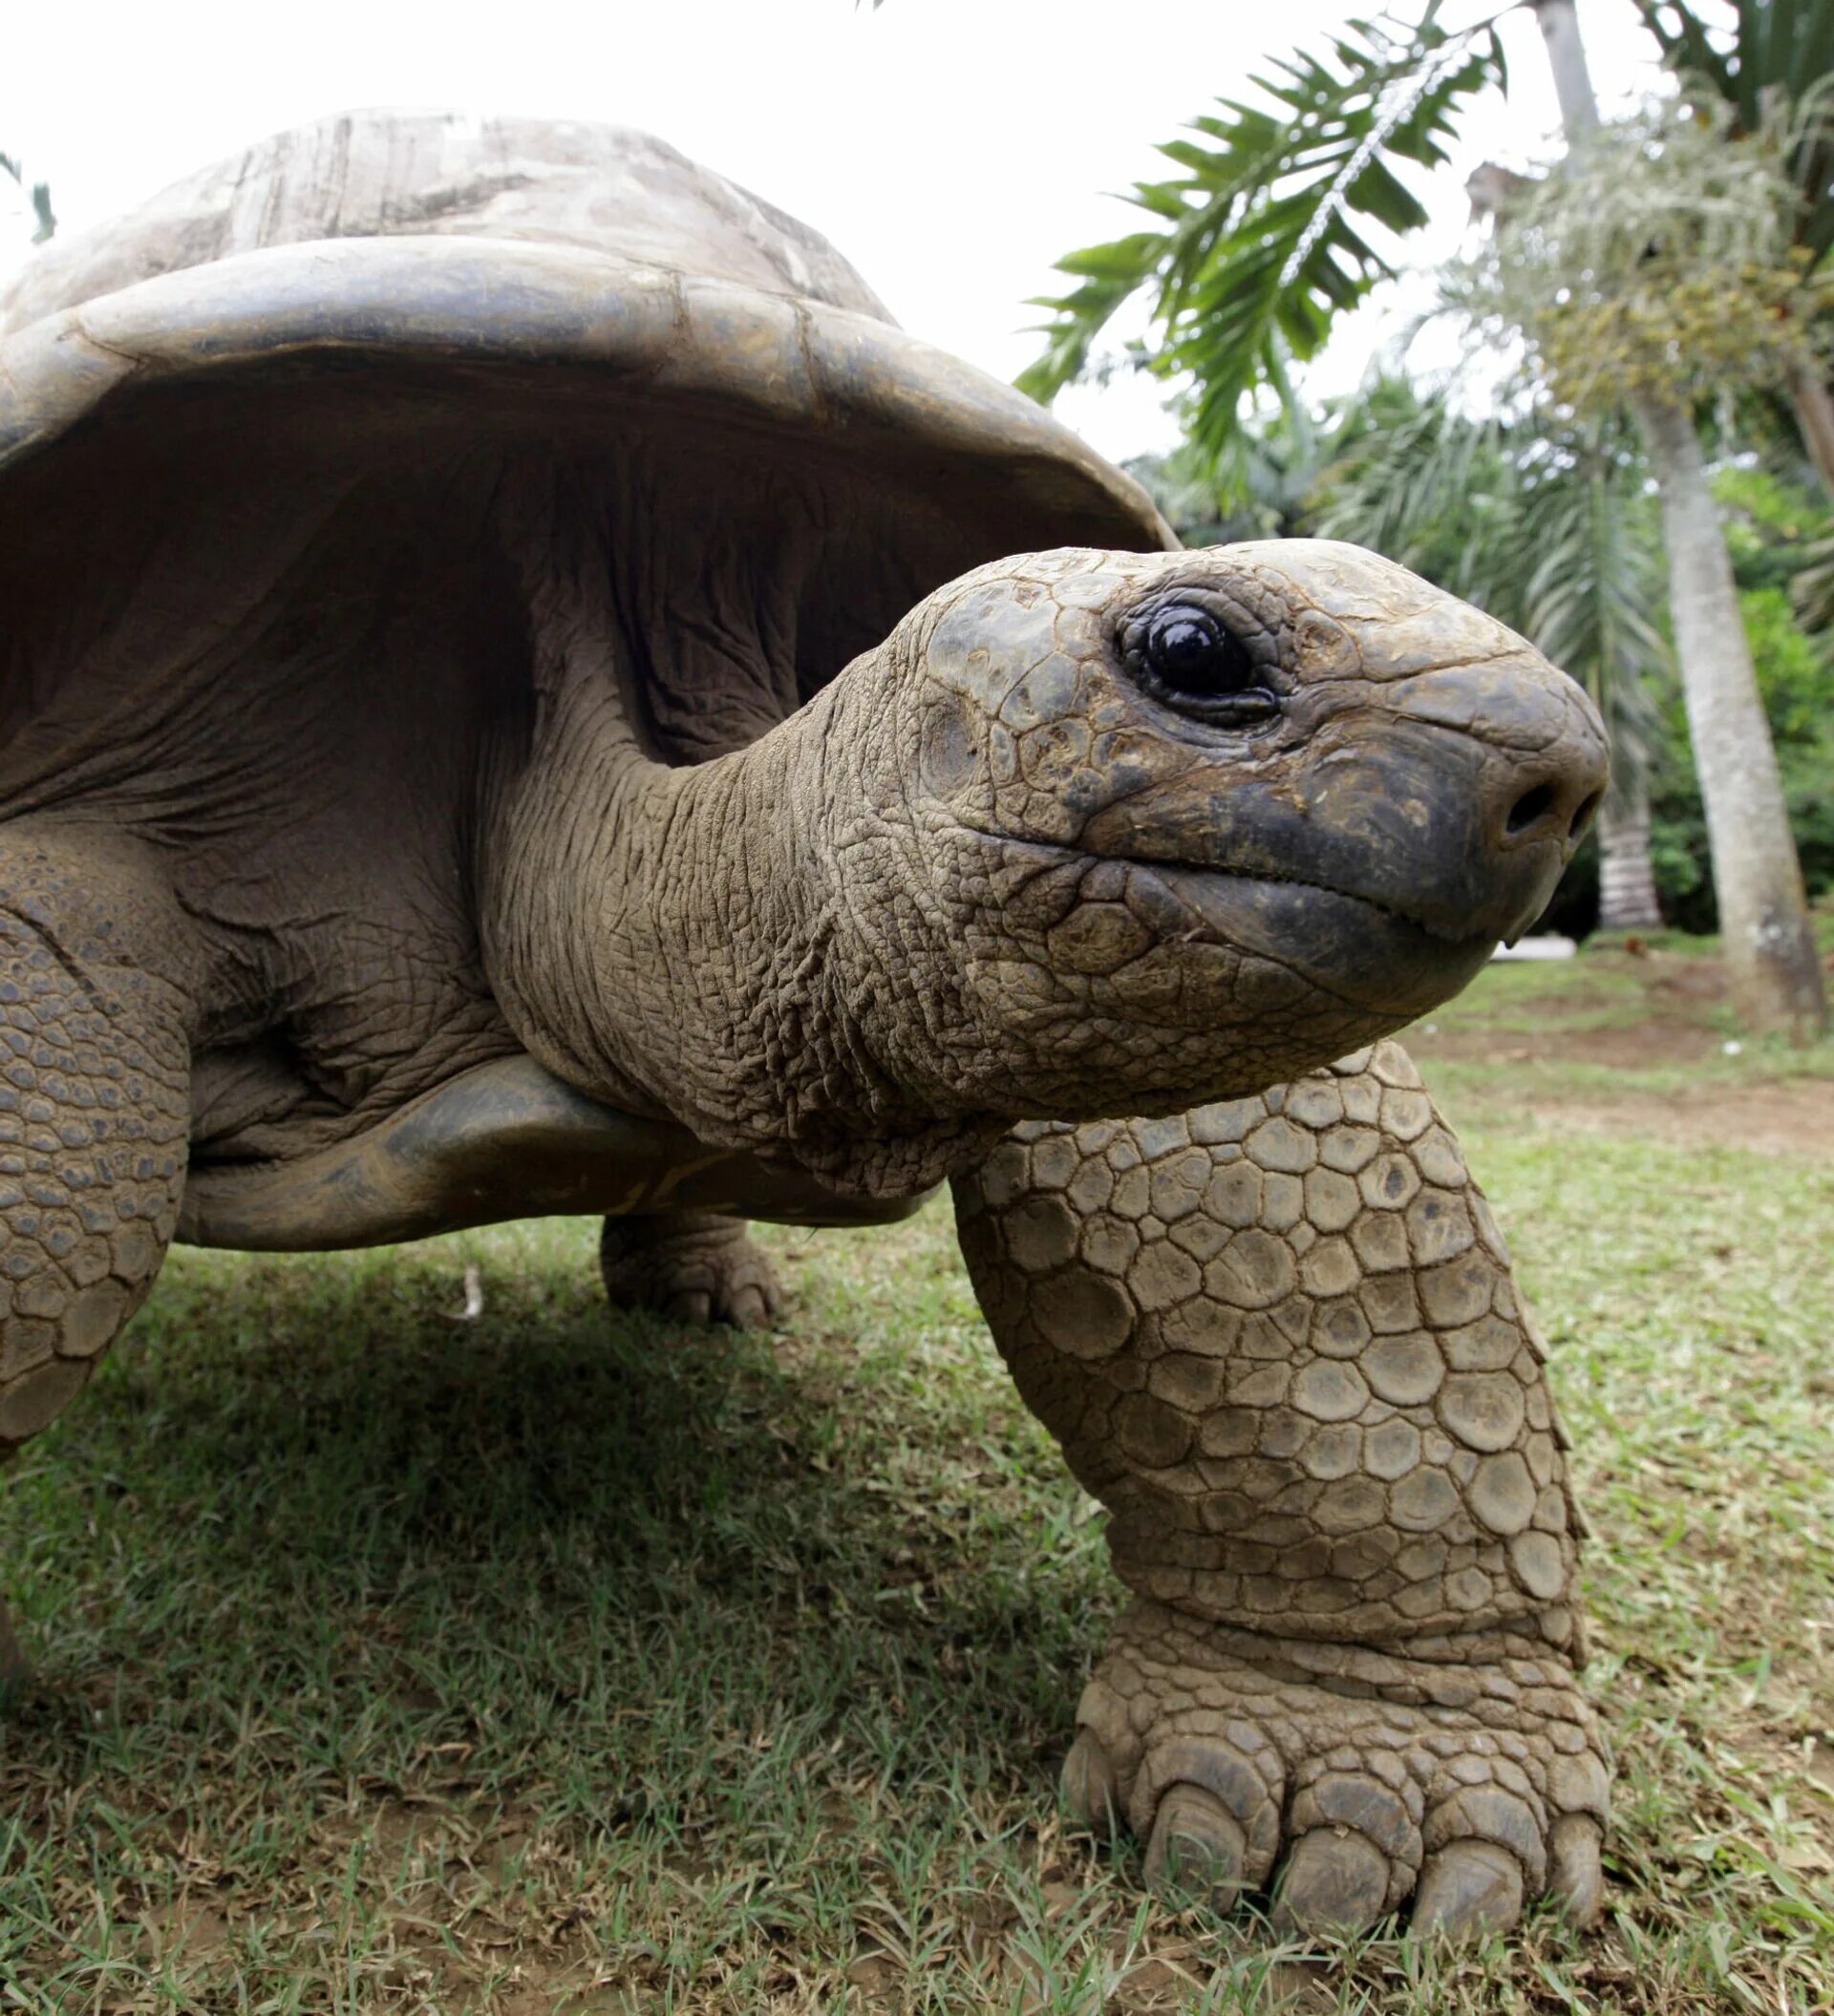 Галапагосская черепаха. Абингдонская слоновая черепаха. Гигантская черепаха. Древние черепахи. Абингдонская слоновая